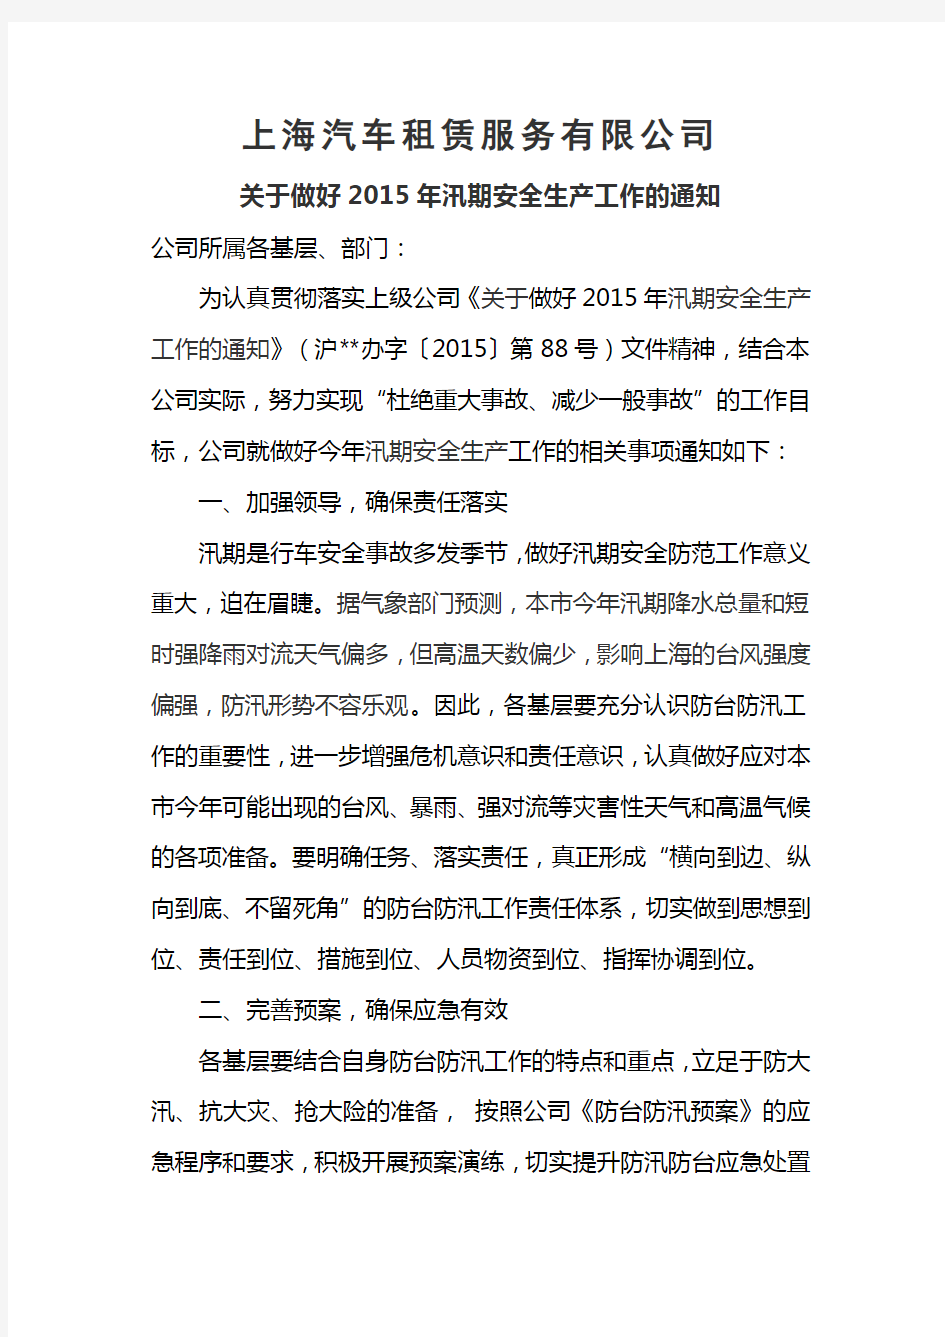 上海汽车租赁公司关于做好2015年汛期安全生产工作的通知